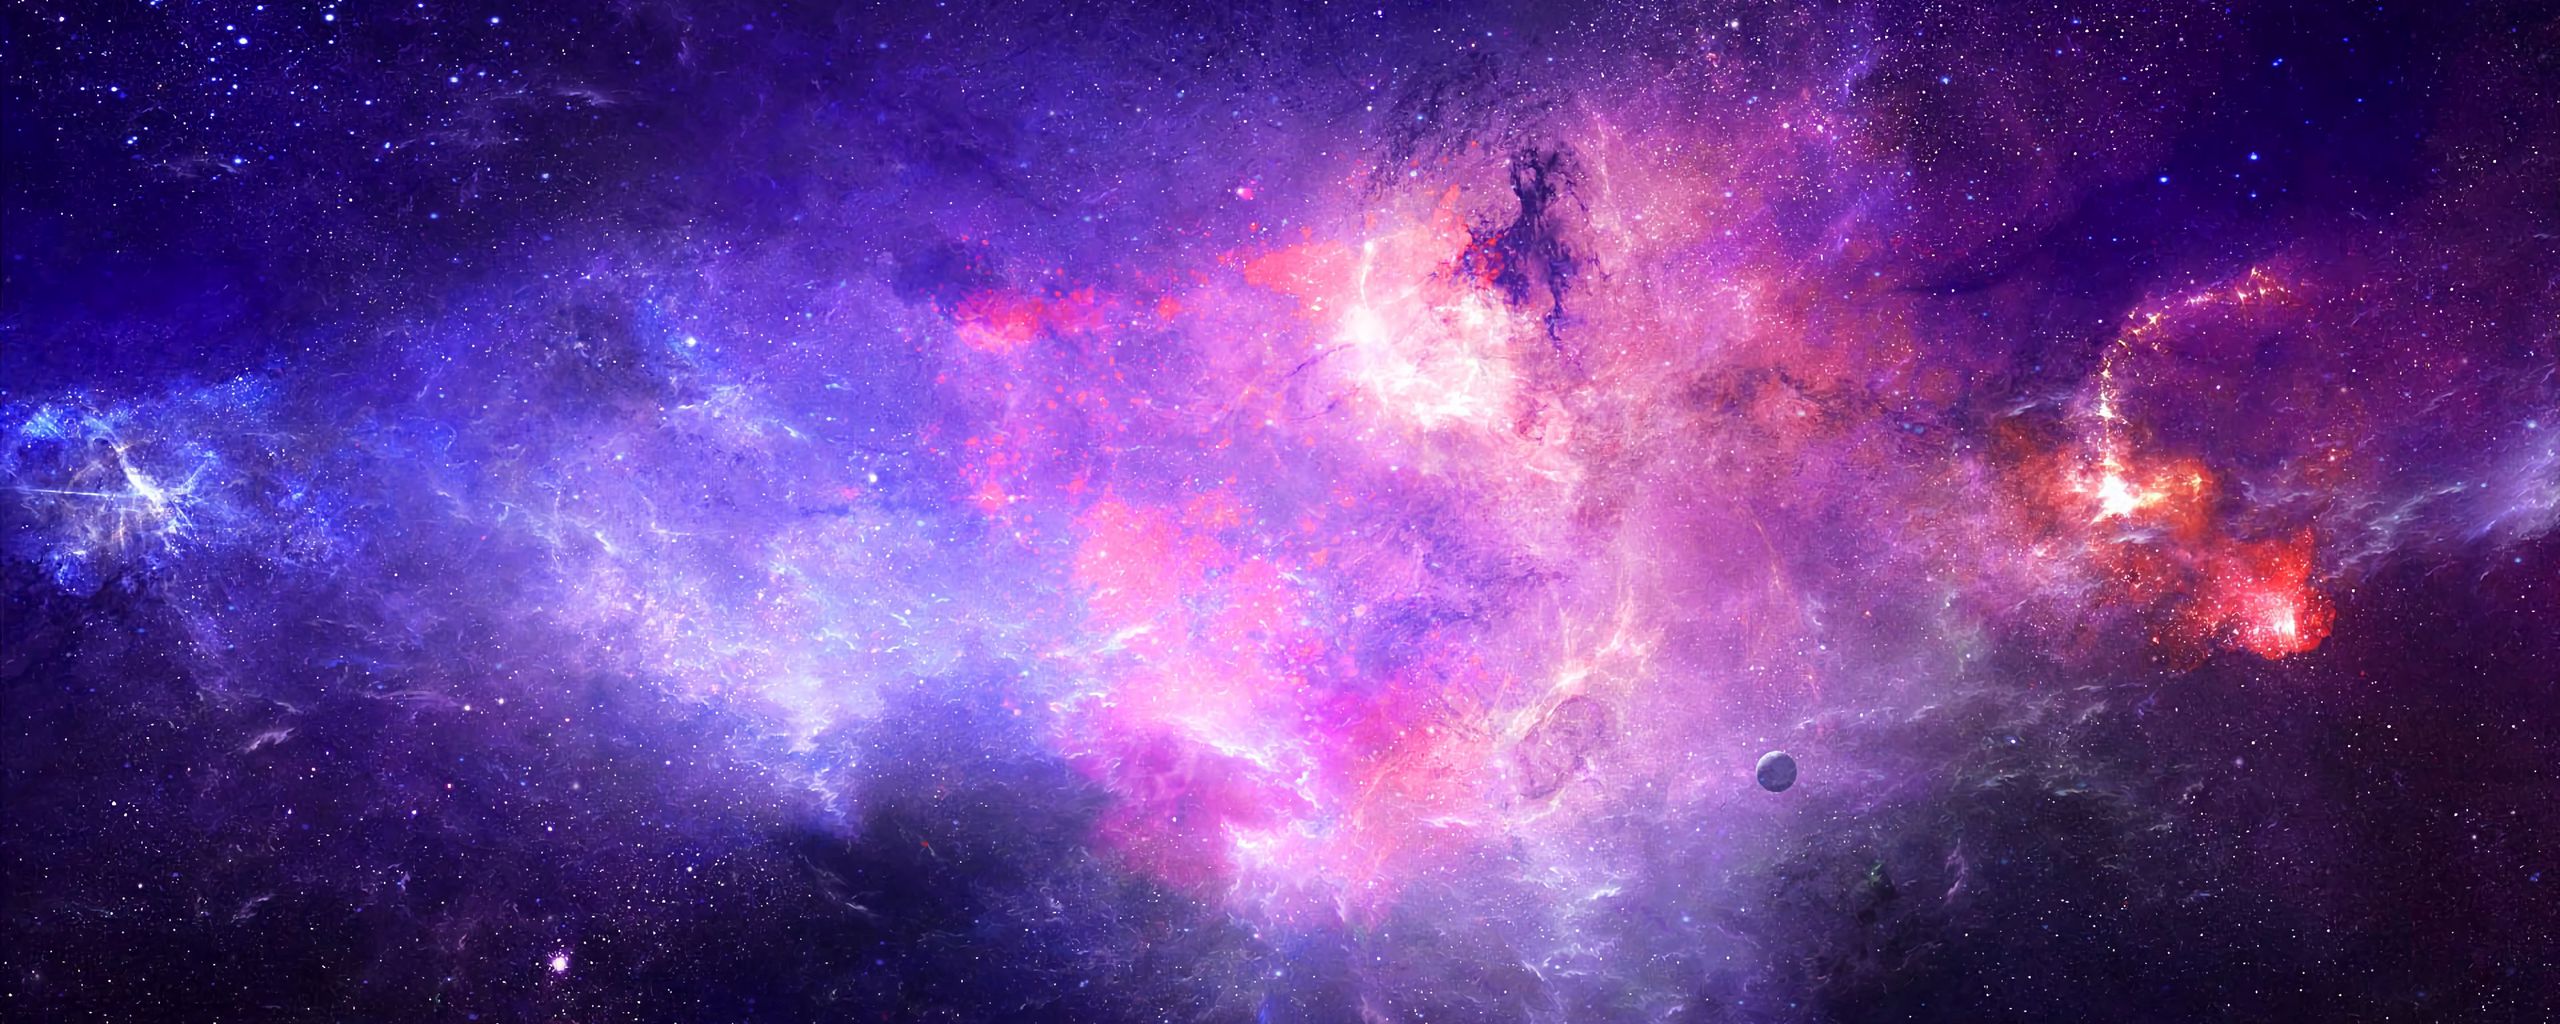 Hình nền thiên hà sẽ đem đến cho bạn một bầu không gian tuyệt đẹp với đám mây khí hùng vĩ và ánh sáng rực rỡ. Với độ phân giải đen 2560x1024, hình nền này sẽ tạo cho bạn một không gian làm việc tuyệt vời và thư giãn.